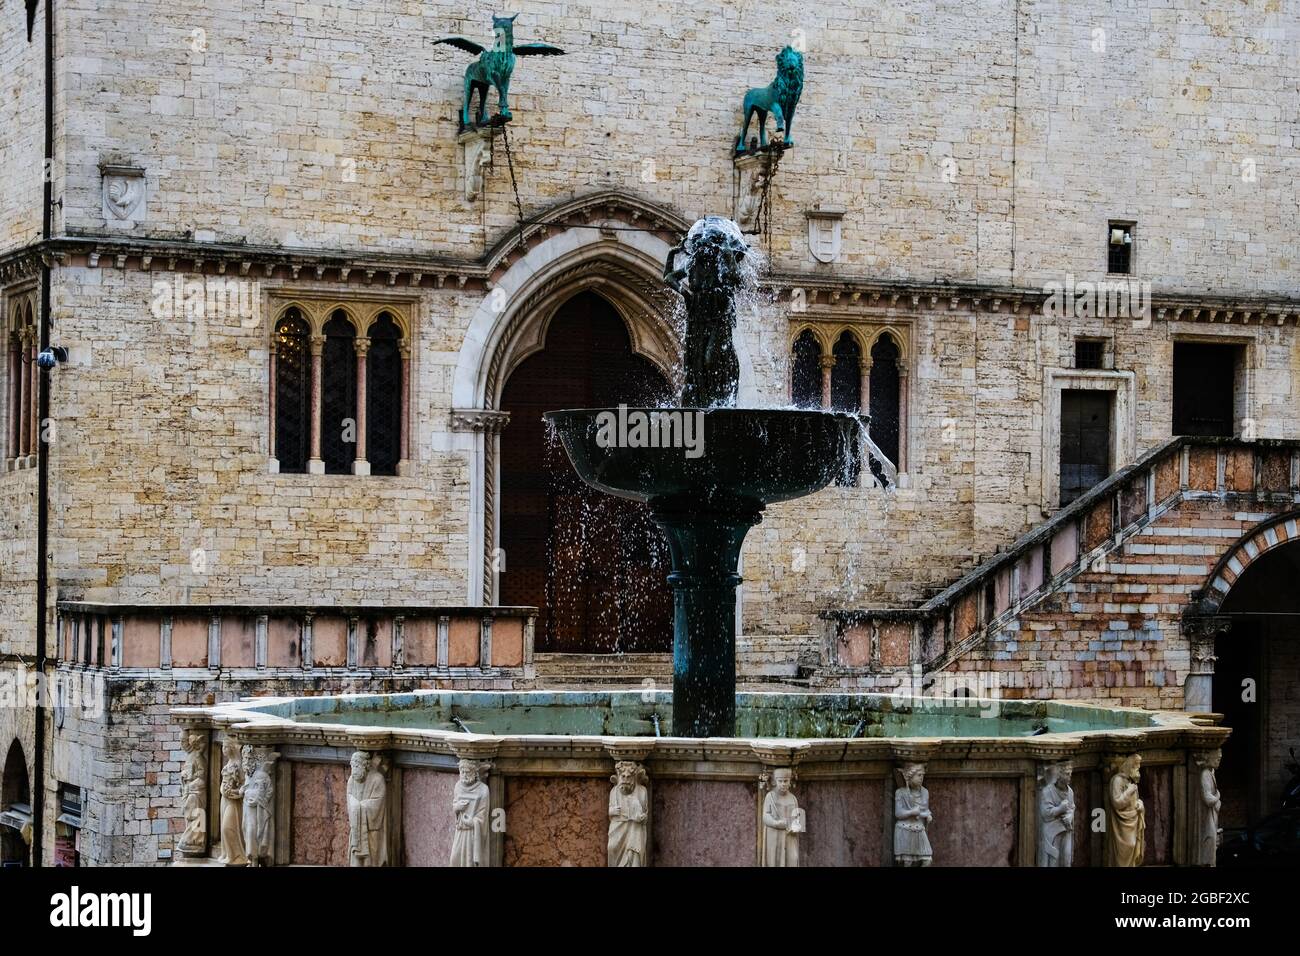 The Fontana Maggiore fountain in Perugia Italy Stock Photo